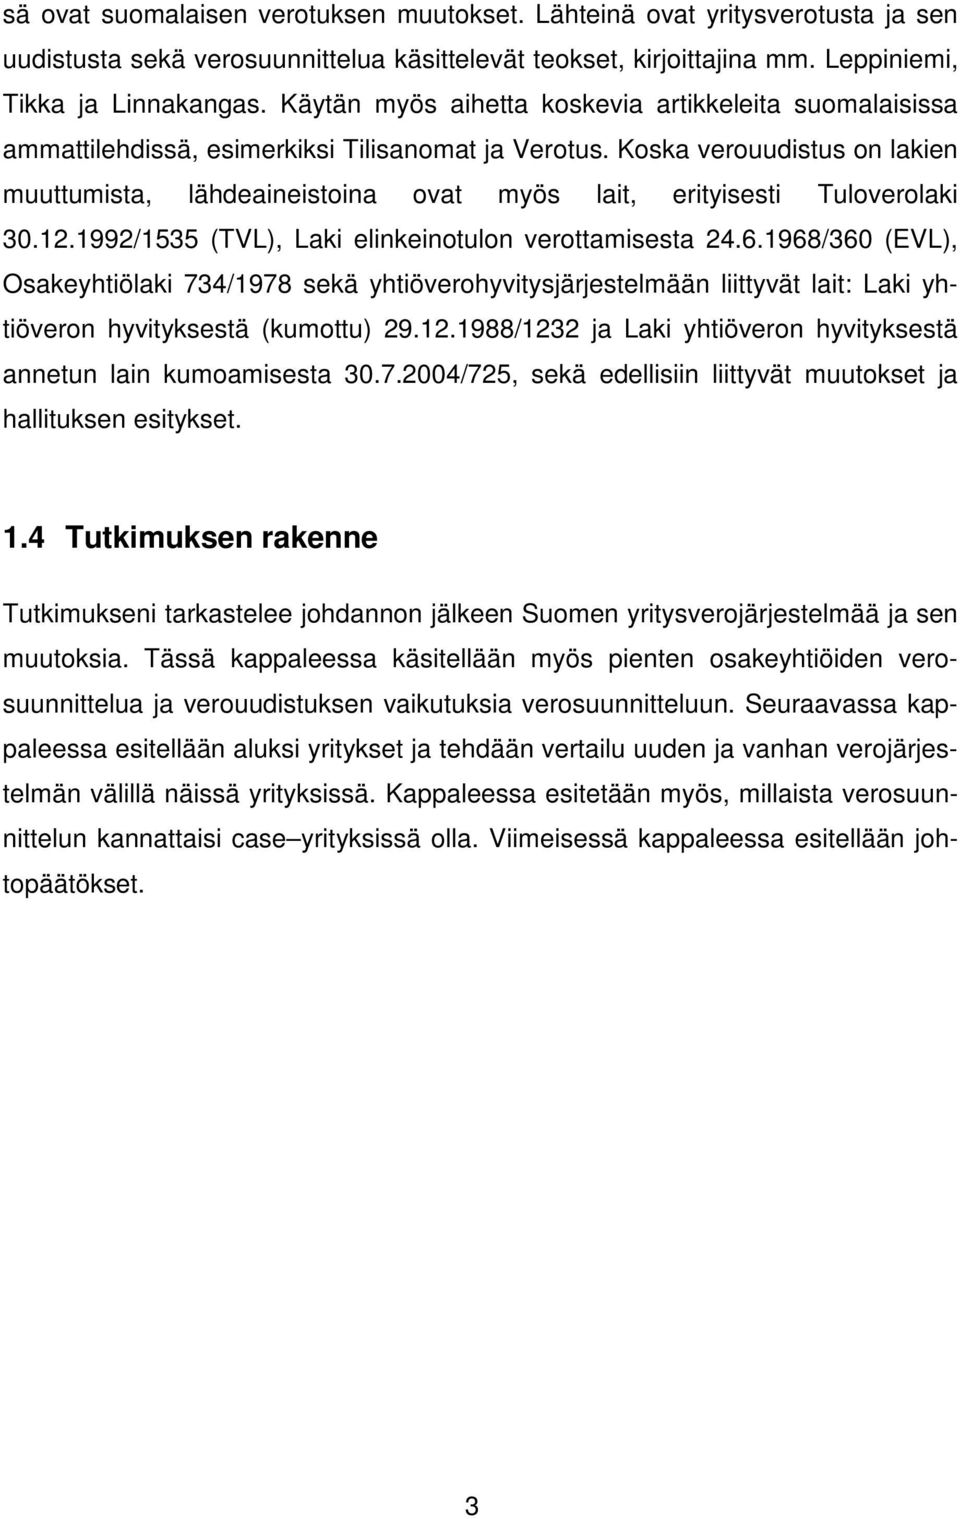 Koska verouudistus on lakien muuttumista, lähdeaineistoina ovat myös lait, erityisesti Tuloverolaki 30.12.1992/1535 (TVL), Laki elinkeinotulon verottamisesta 24.6.